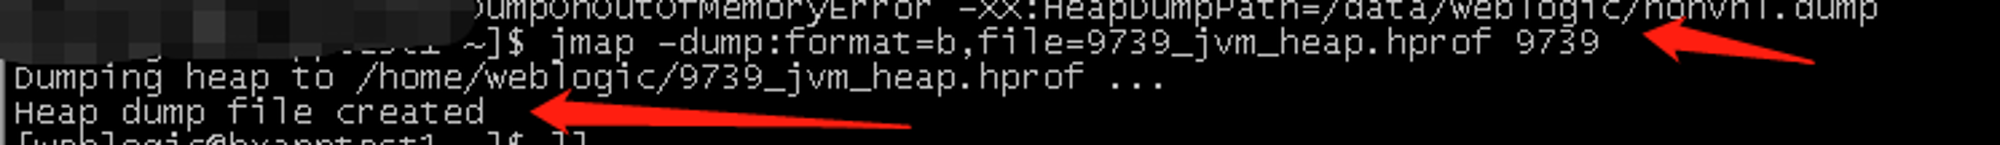 jmap -dump:format=b,file=9739_jvm_heap.hprof 9739